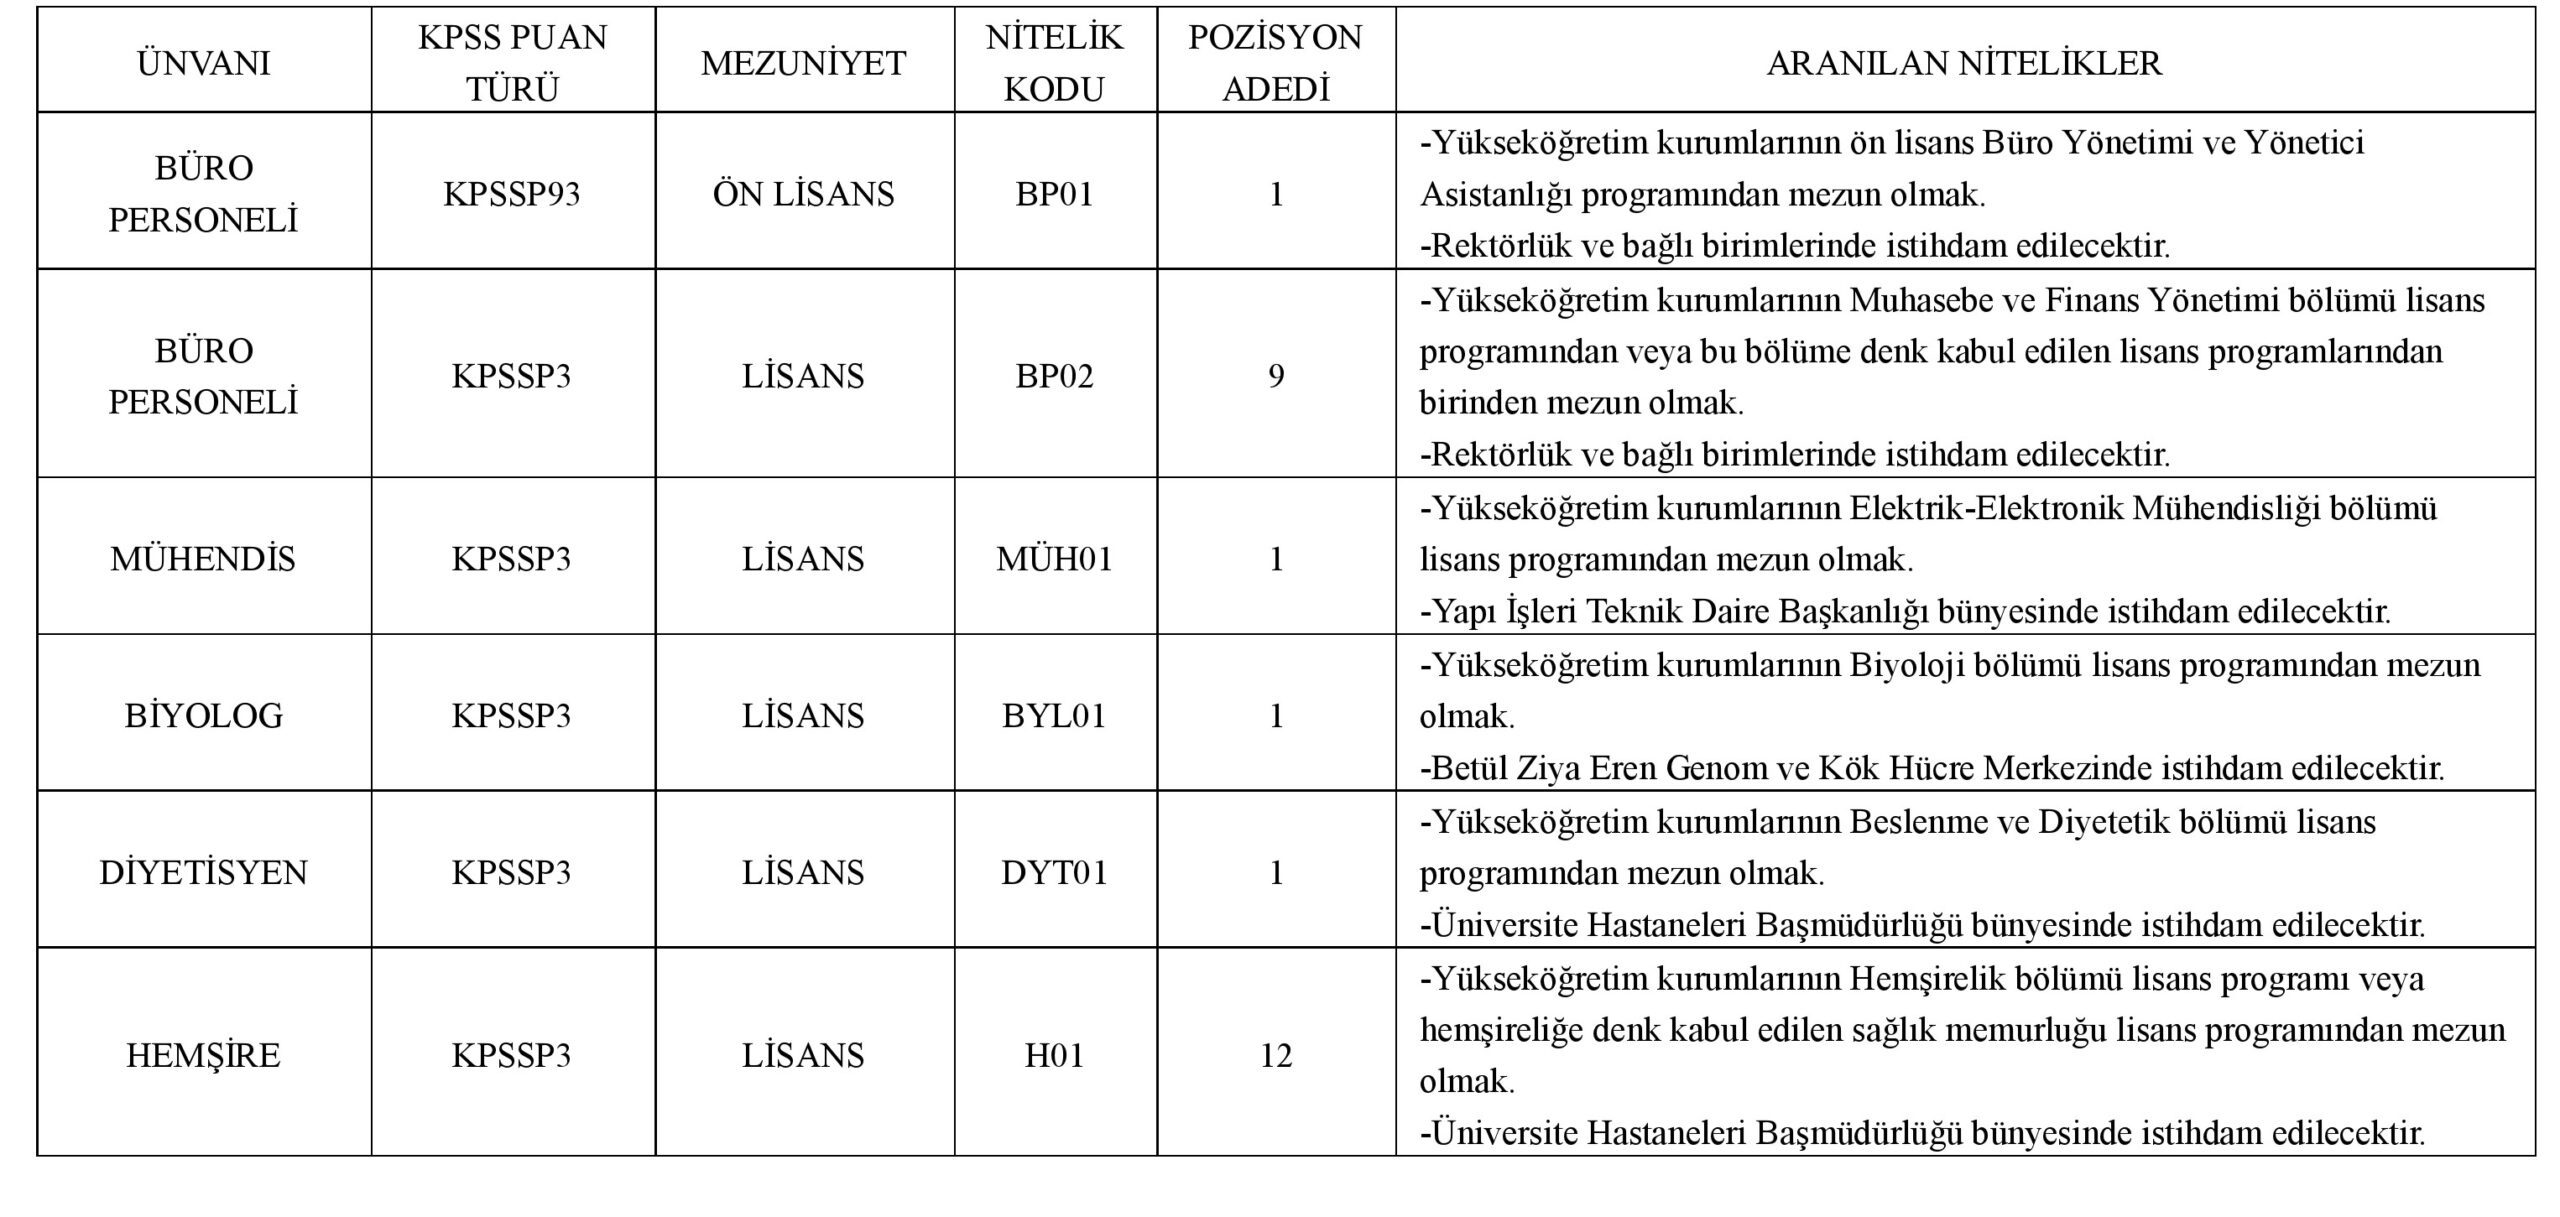 Erciyes Üniversitesine Çok Sayıda Sözleşmeli Sağlık Personeli Alınacak